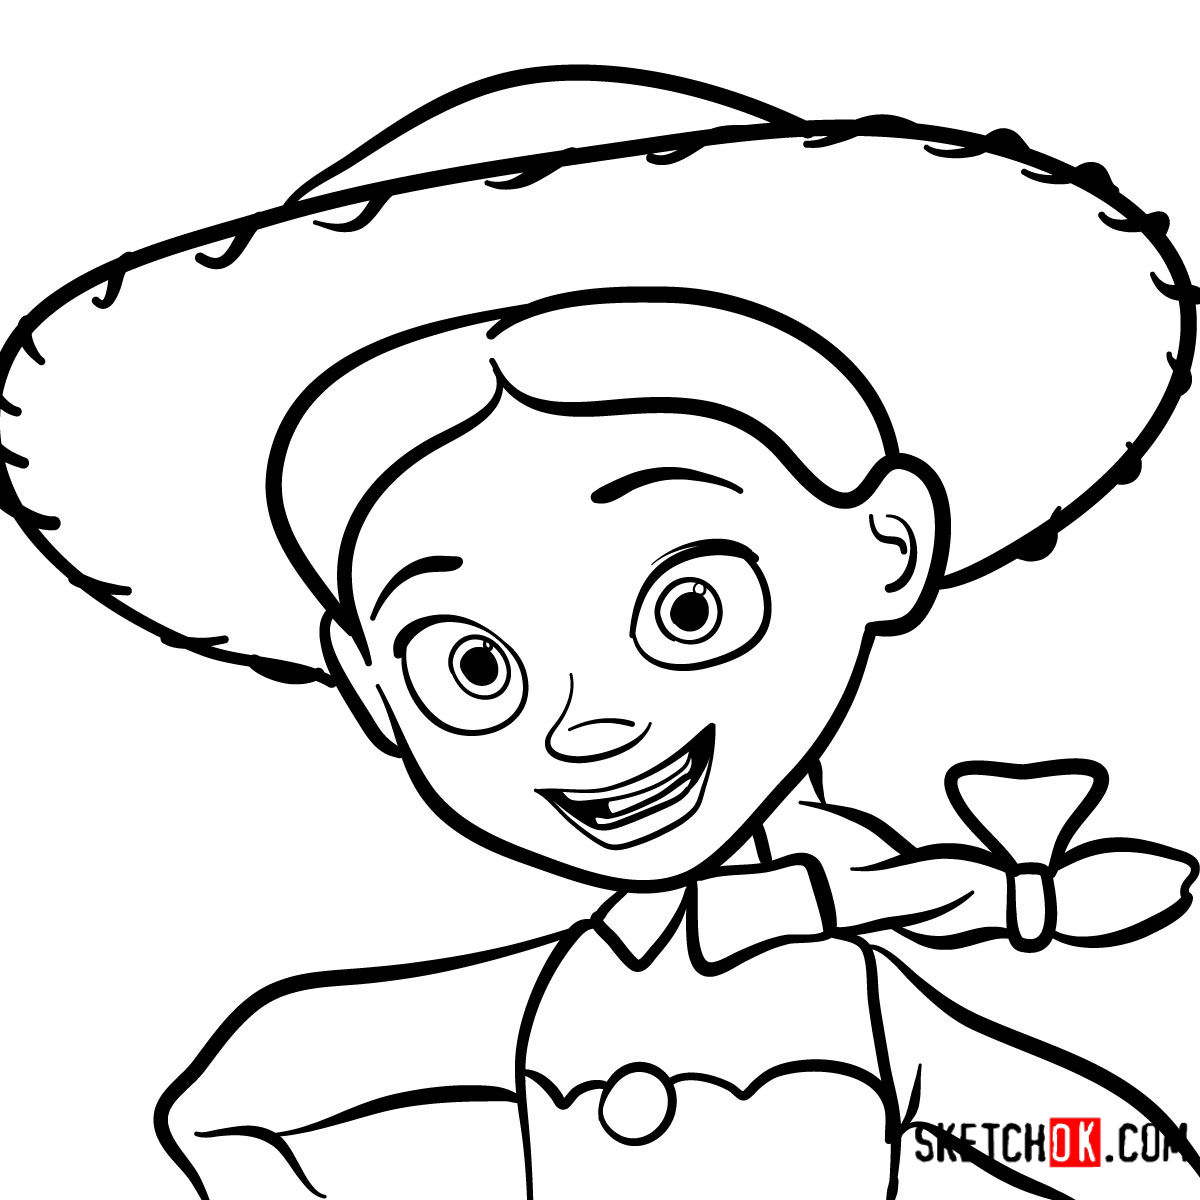 How to draw a portrait of Jessie | Toy Story